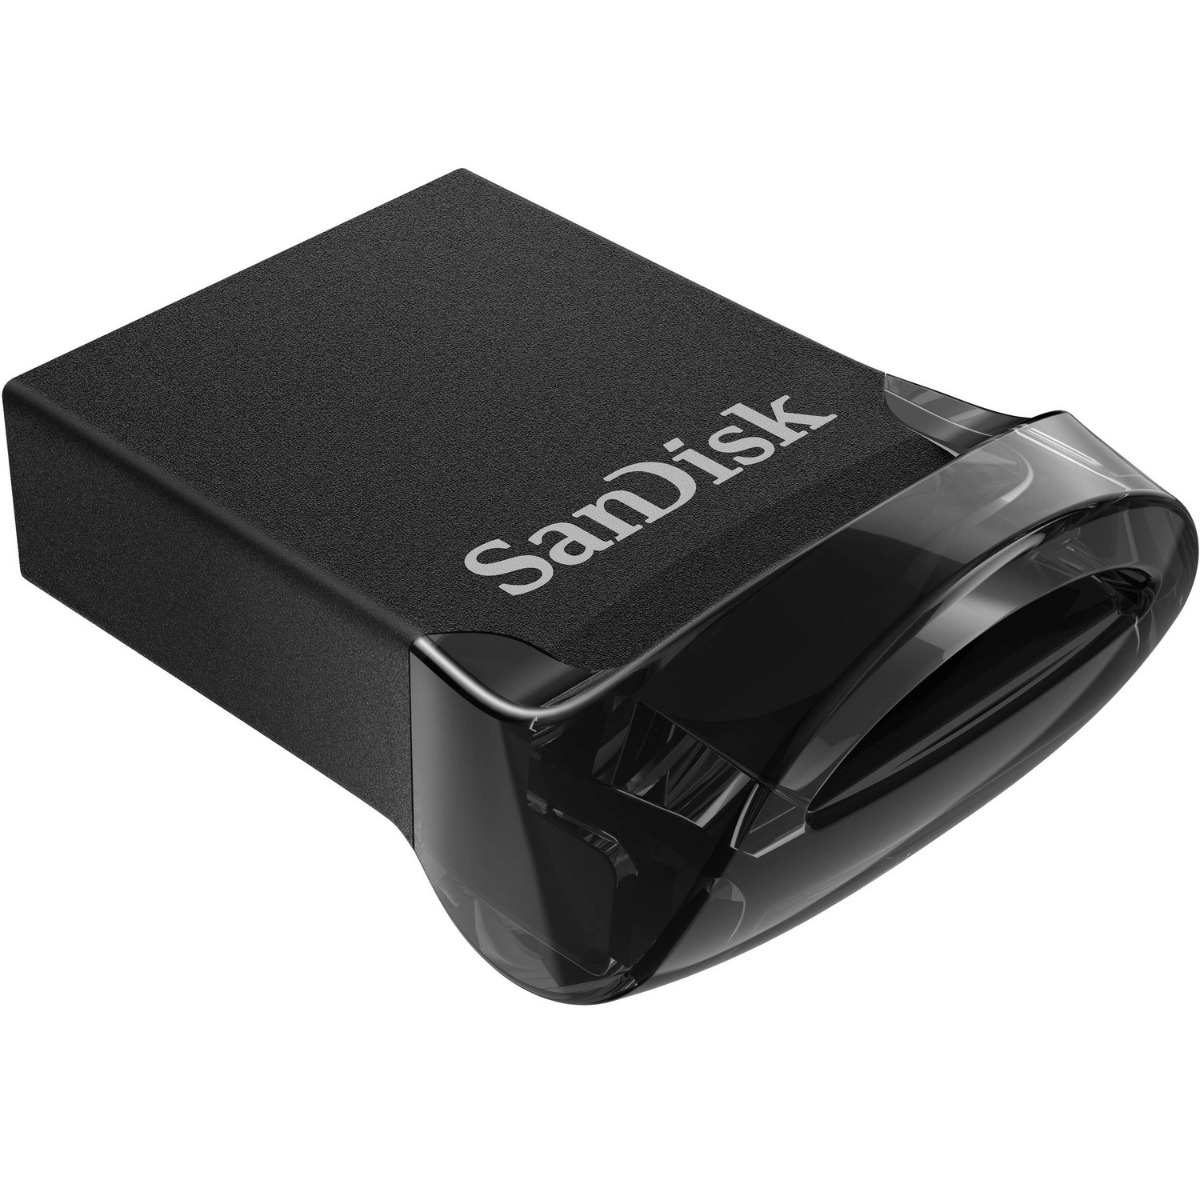 SanDisk ULTRA Fit USB 3.1 SDCZ430 _064G_G46